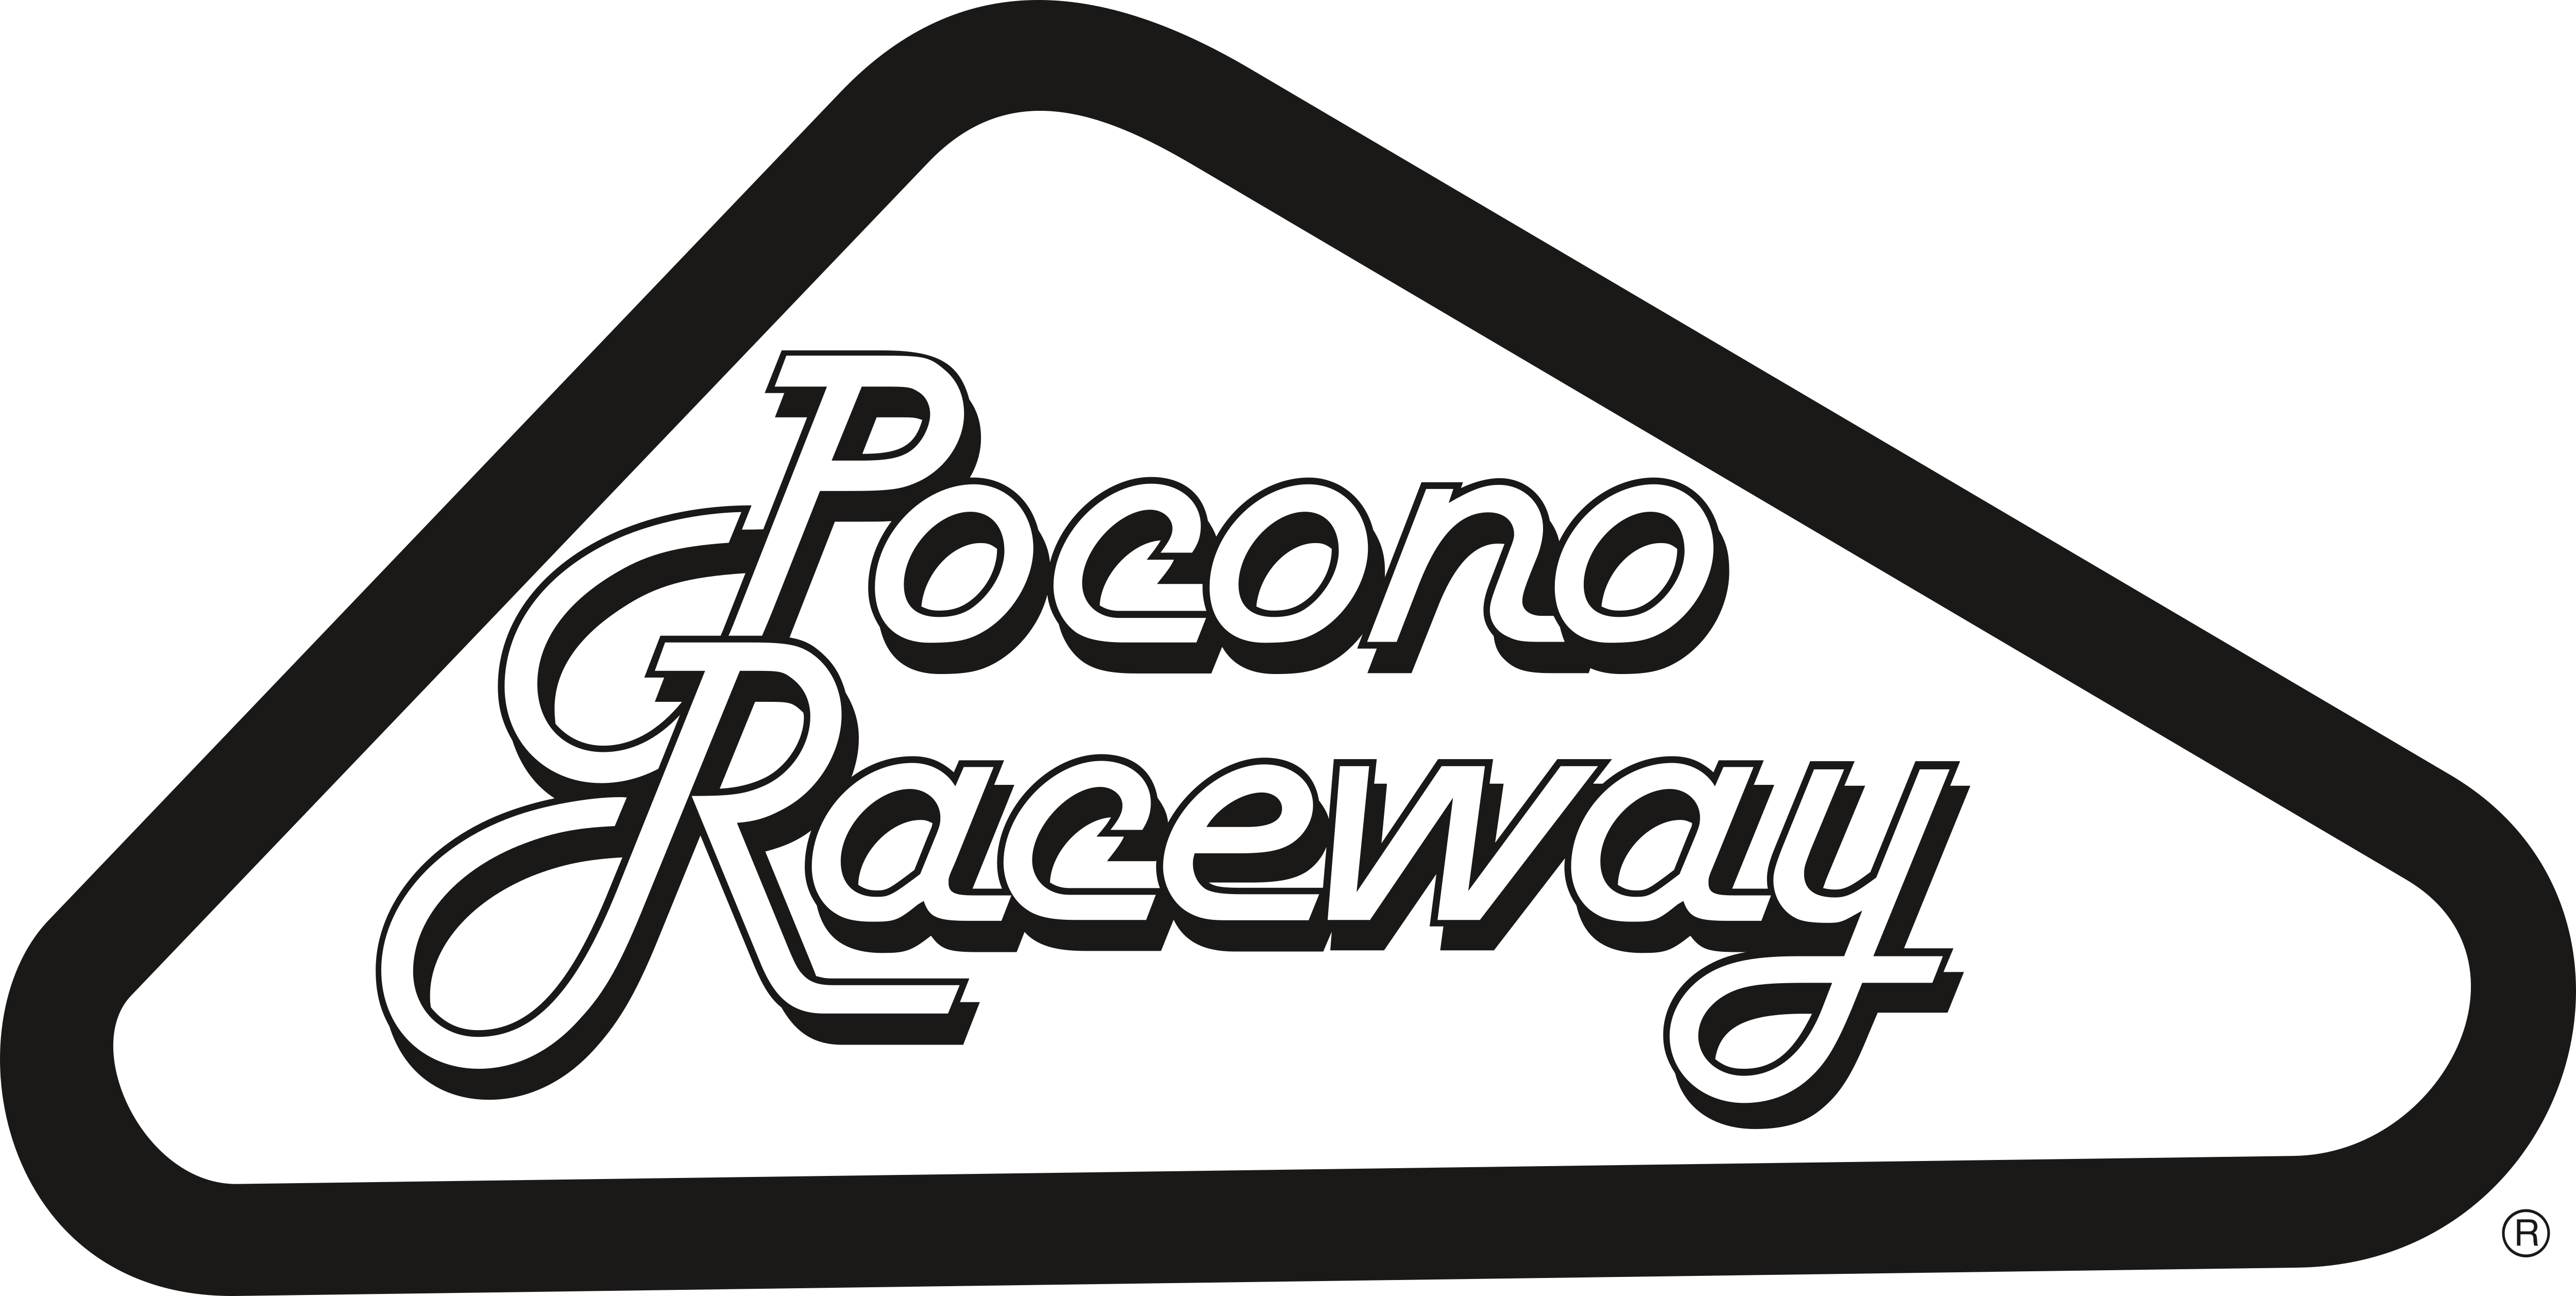 Pocono International Raceway Mount Pocono 12" X 9" Retro Look Metal Sign A644 